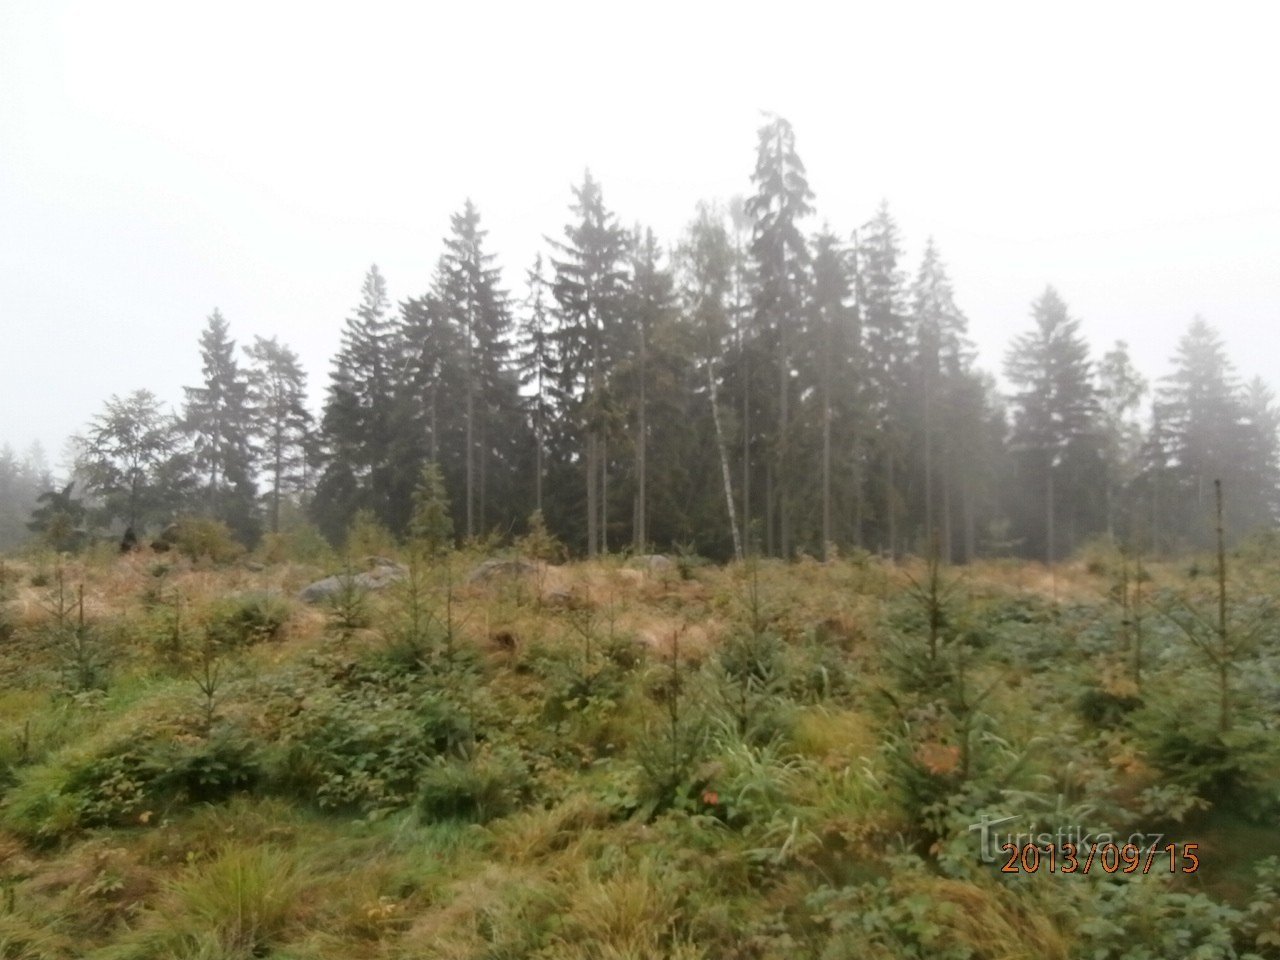 um passeio nas florestas de Tanvald